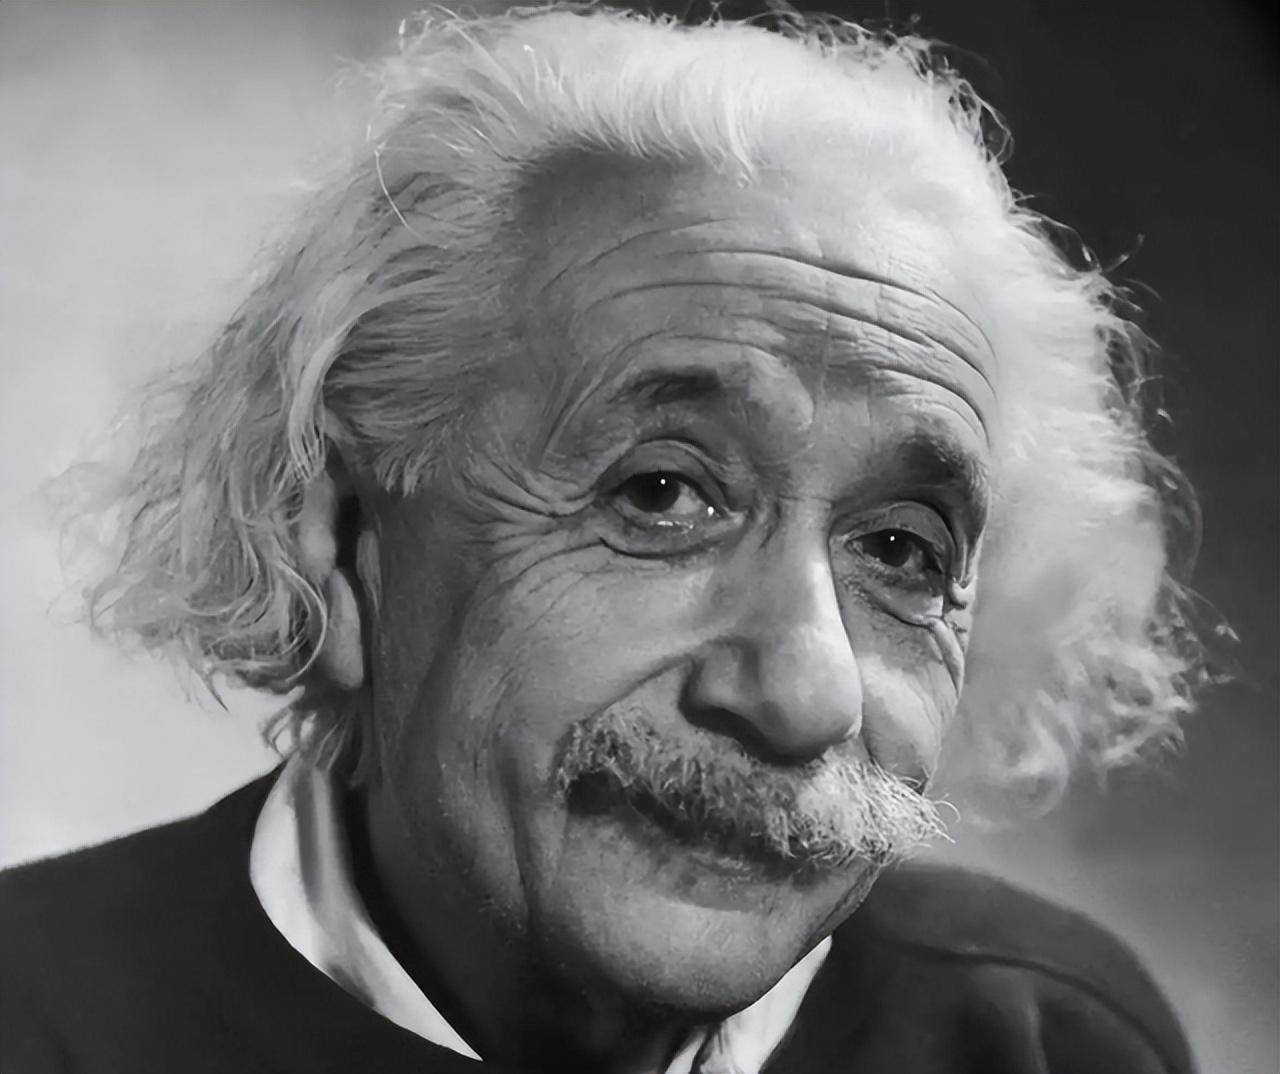 原创爱因斯坦拍照只拍上半身看完原版全身照后网友笑出了声